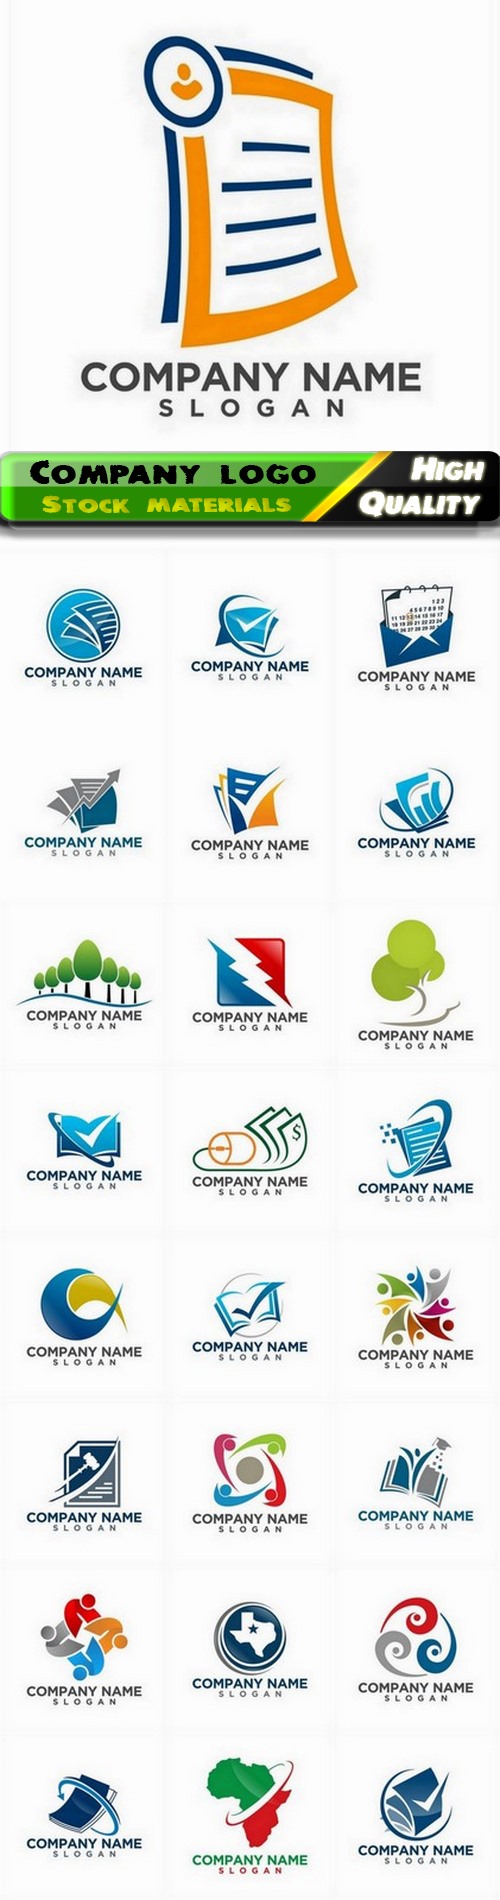 Business company badge logotype and logo emblem 24 - 25 Eps